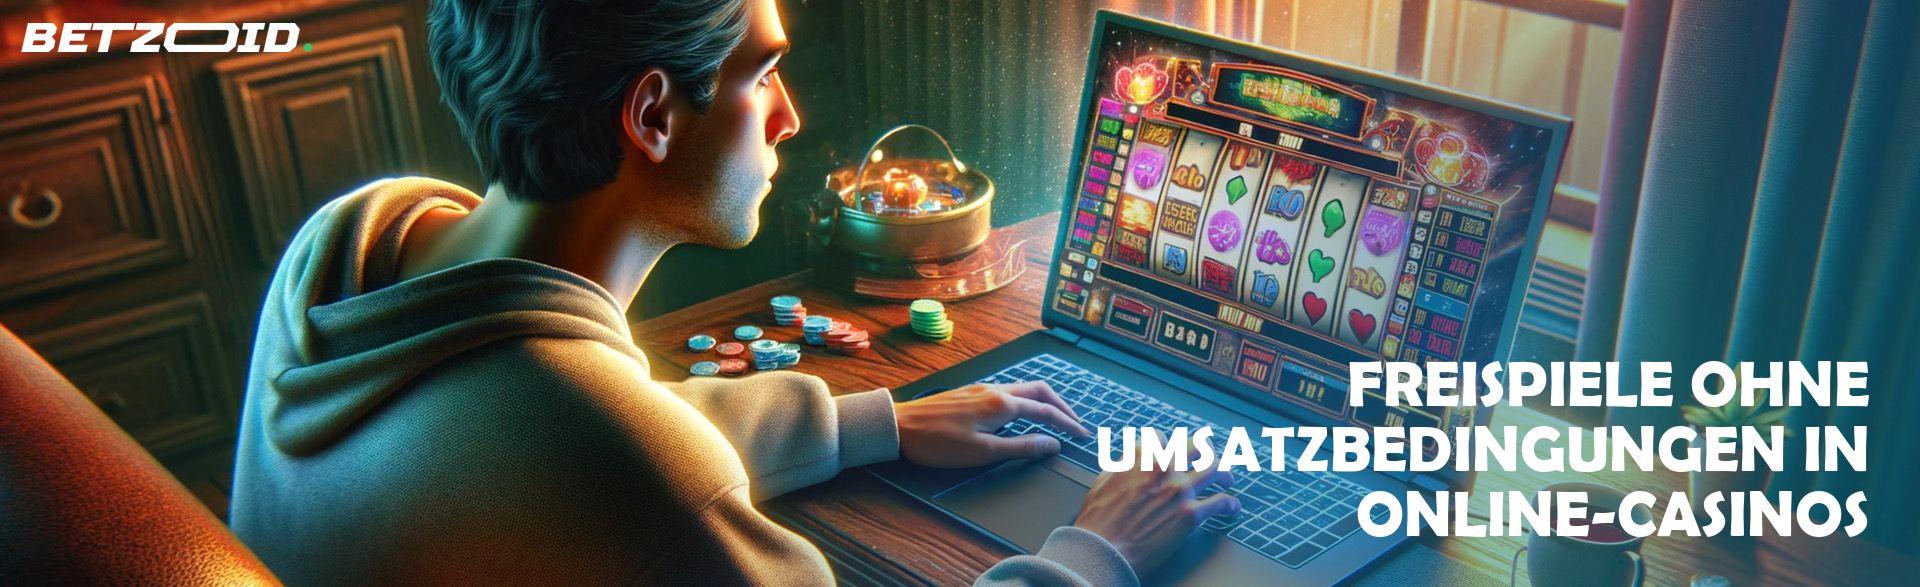 Freispiele ohne Umsatzbedingungen in Online-Casinos.